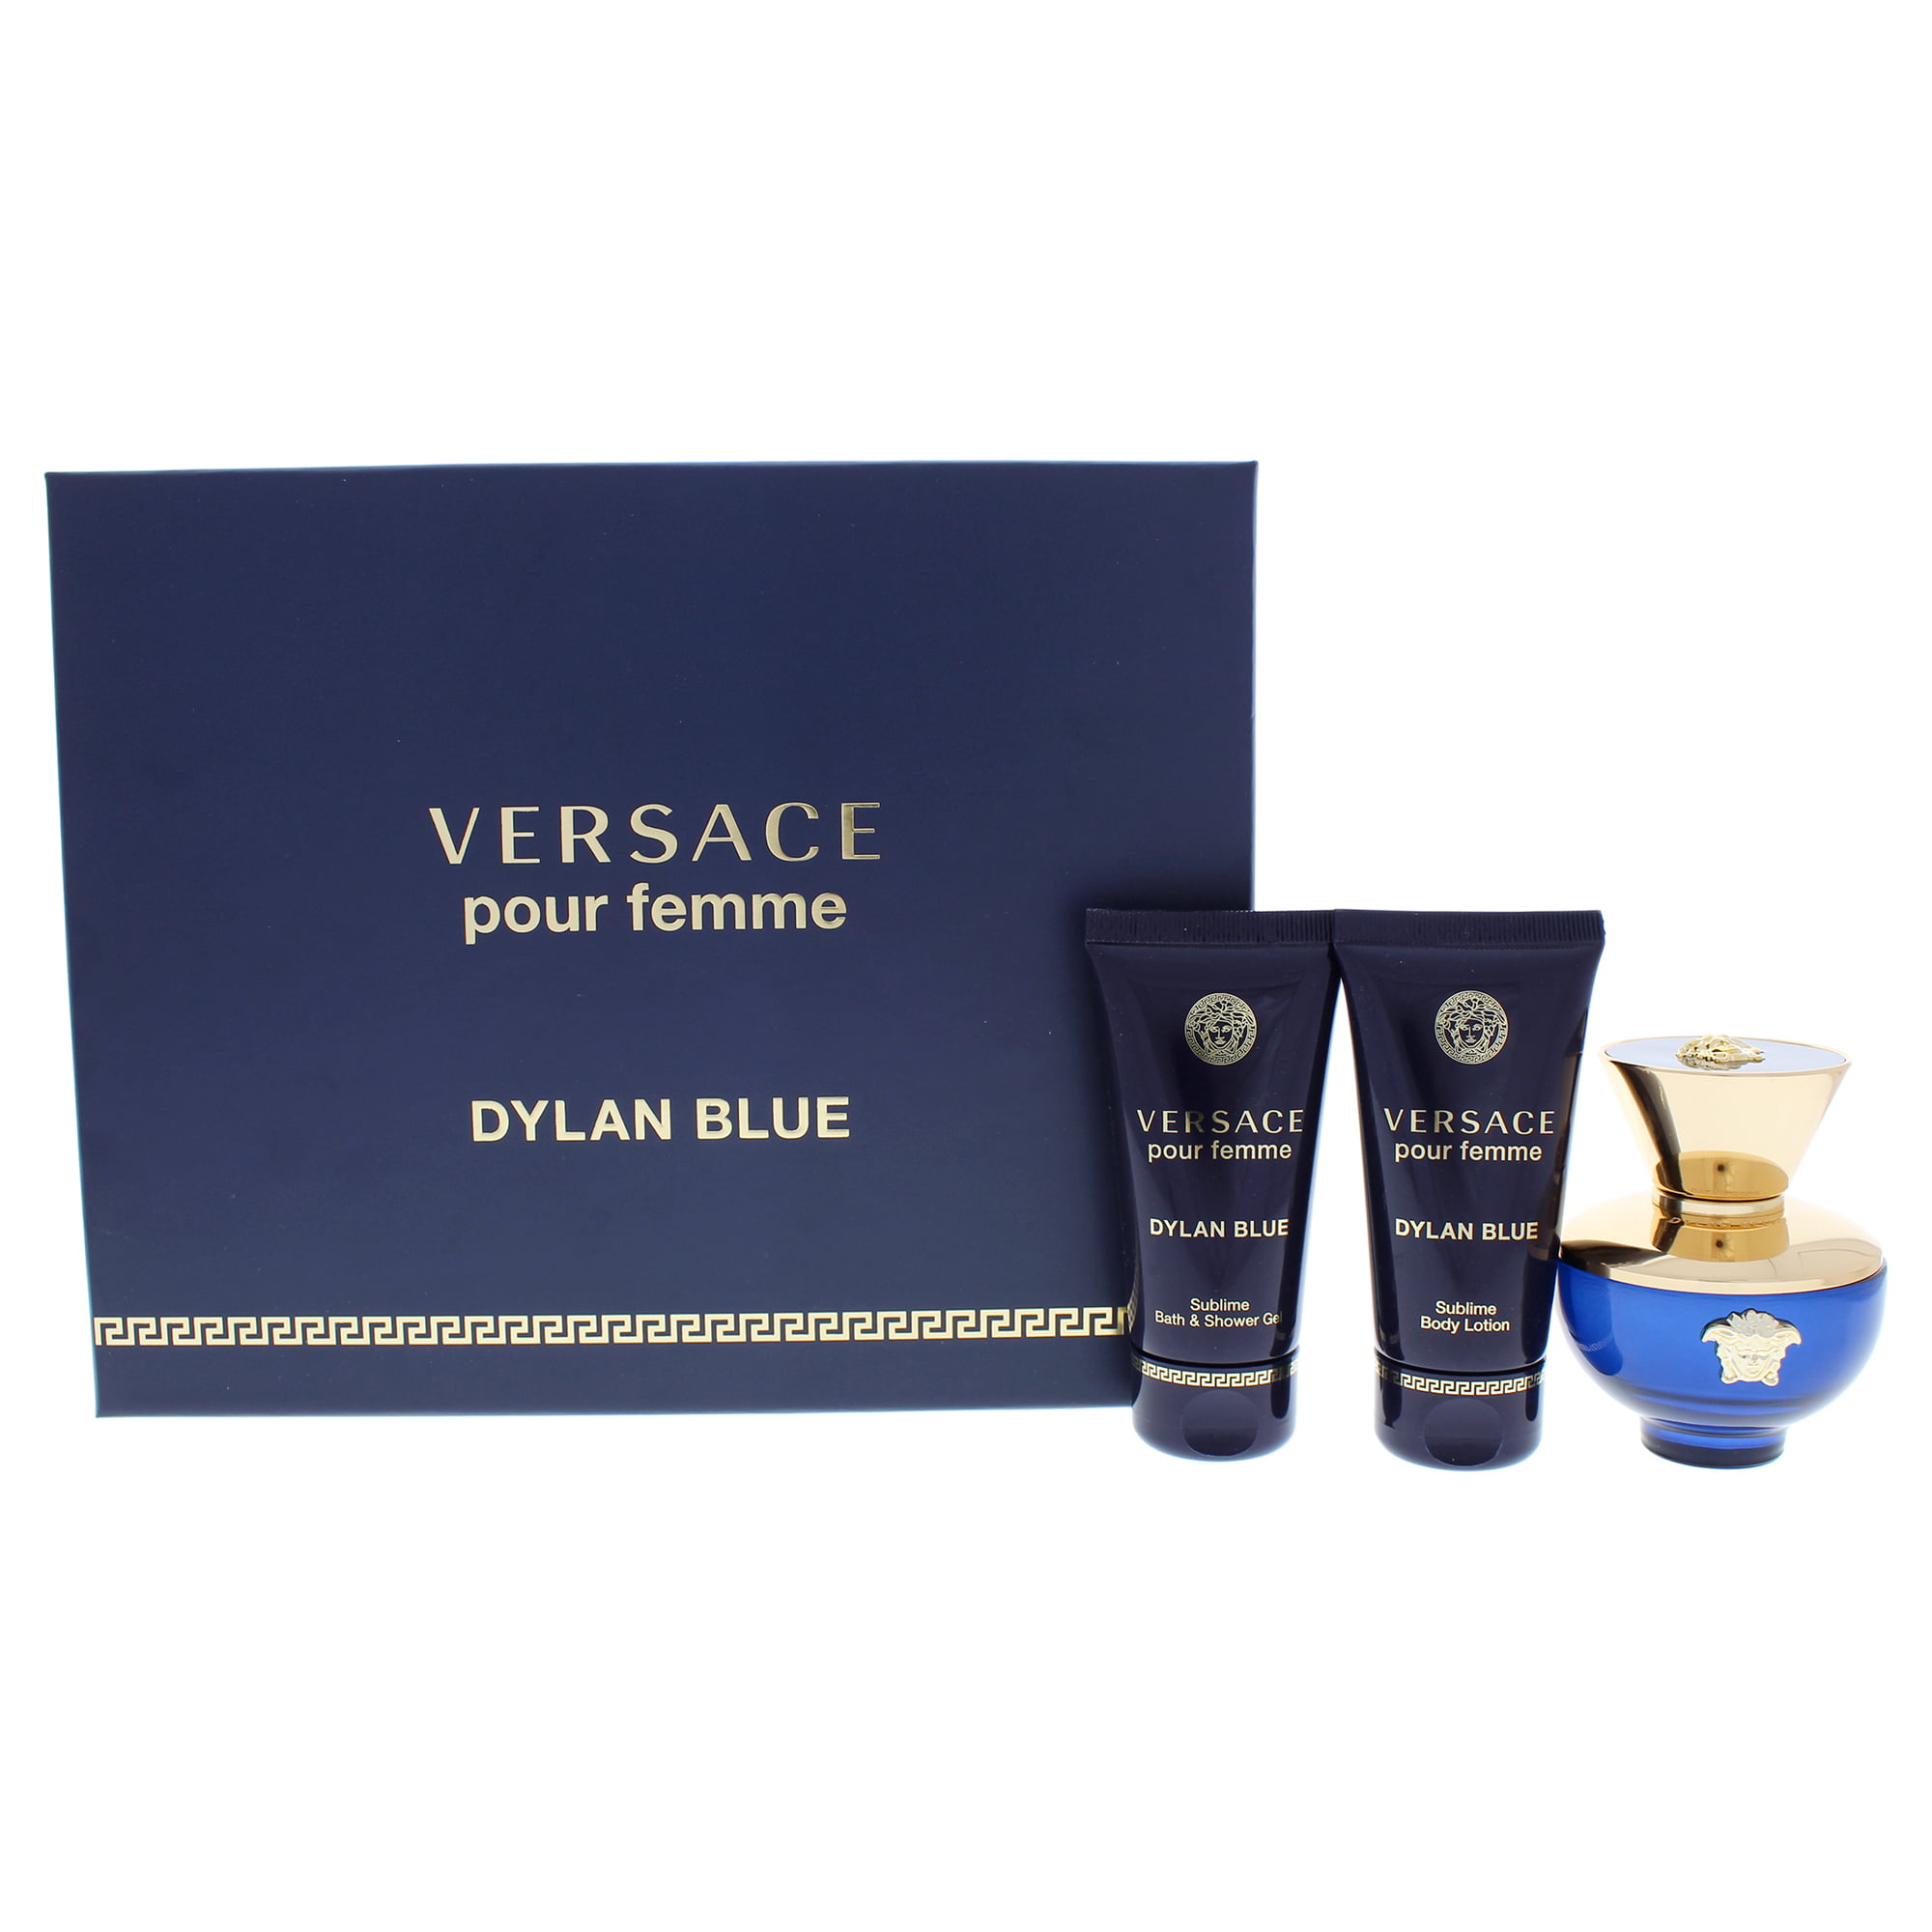 versace dylan blue women gift set